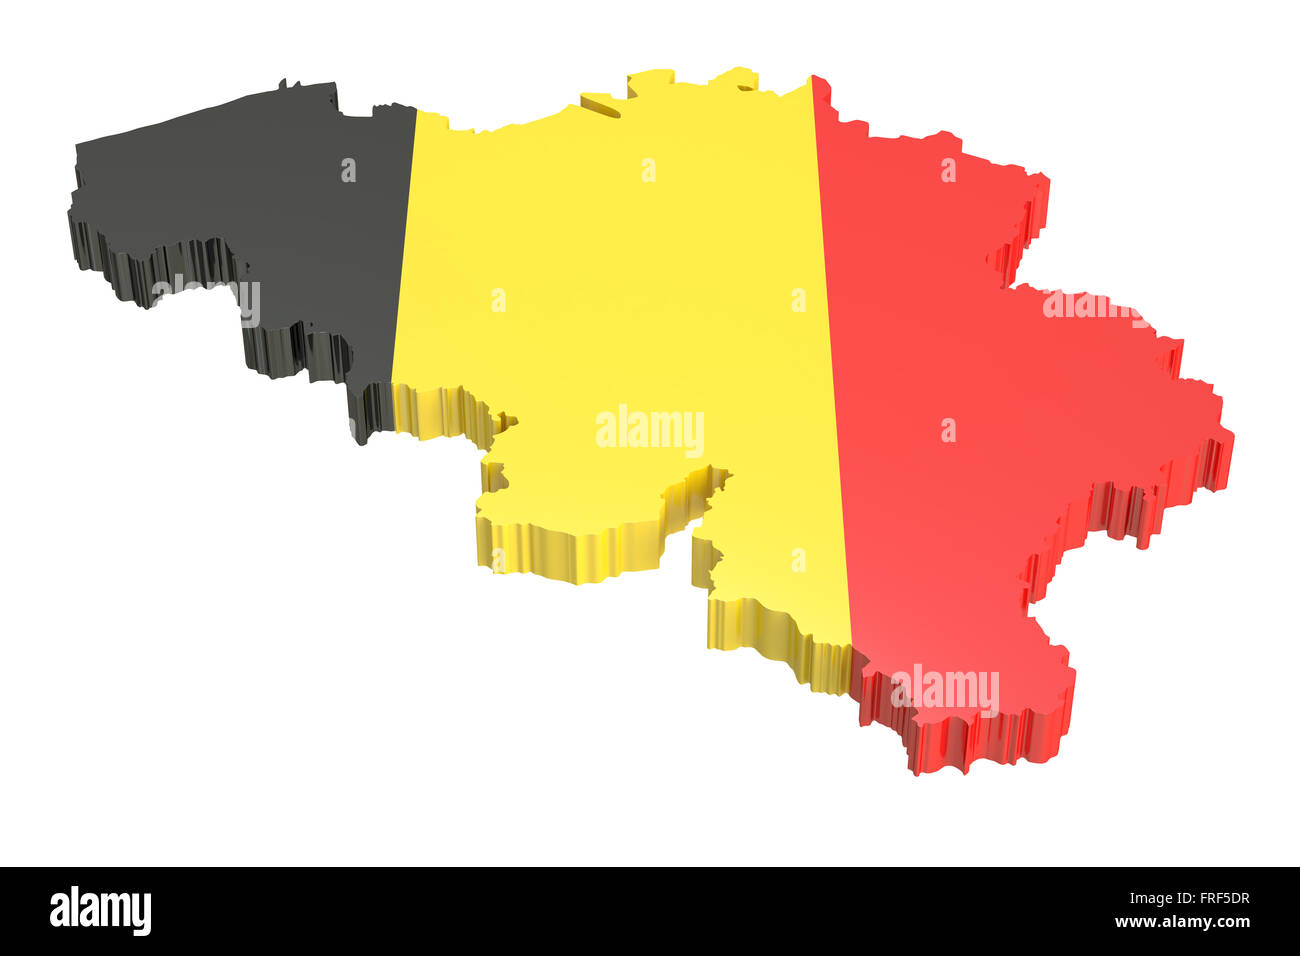 Belgium map isolated on white background Stock Photo